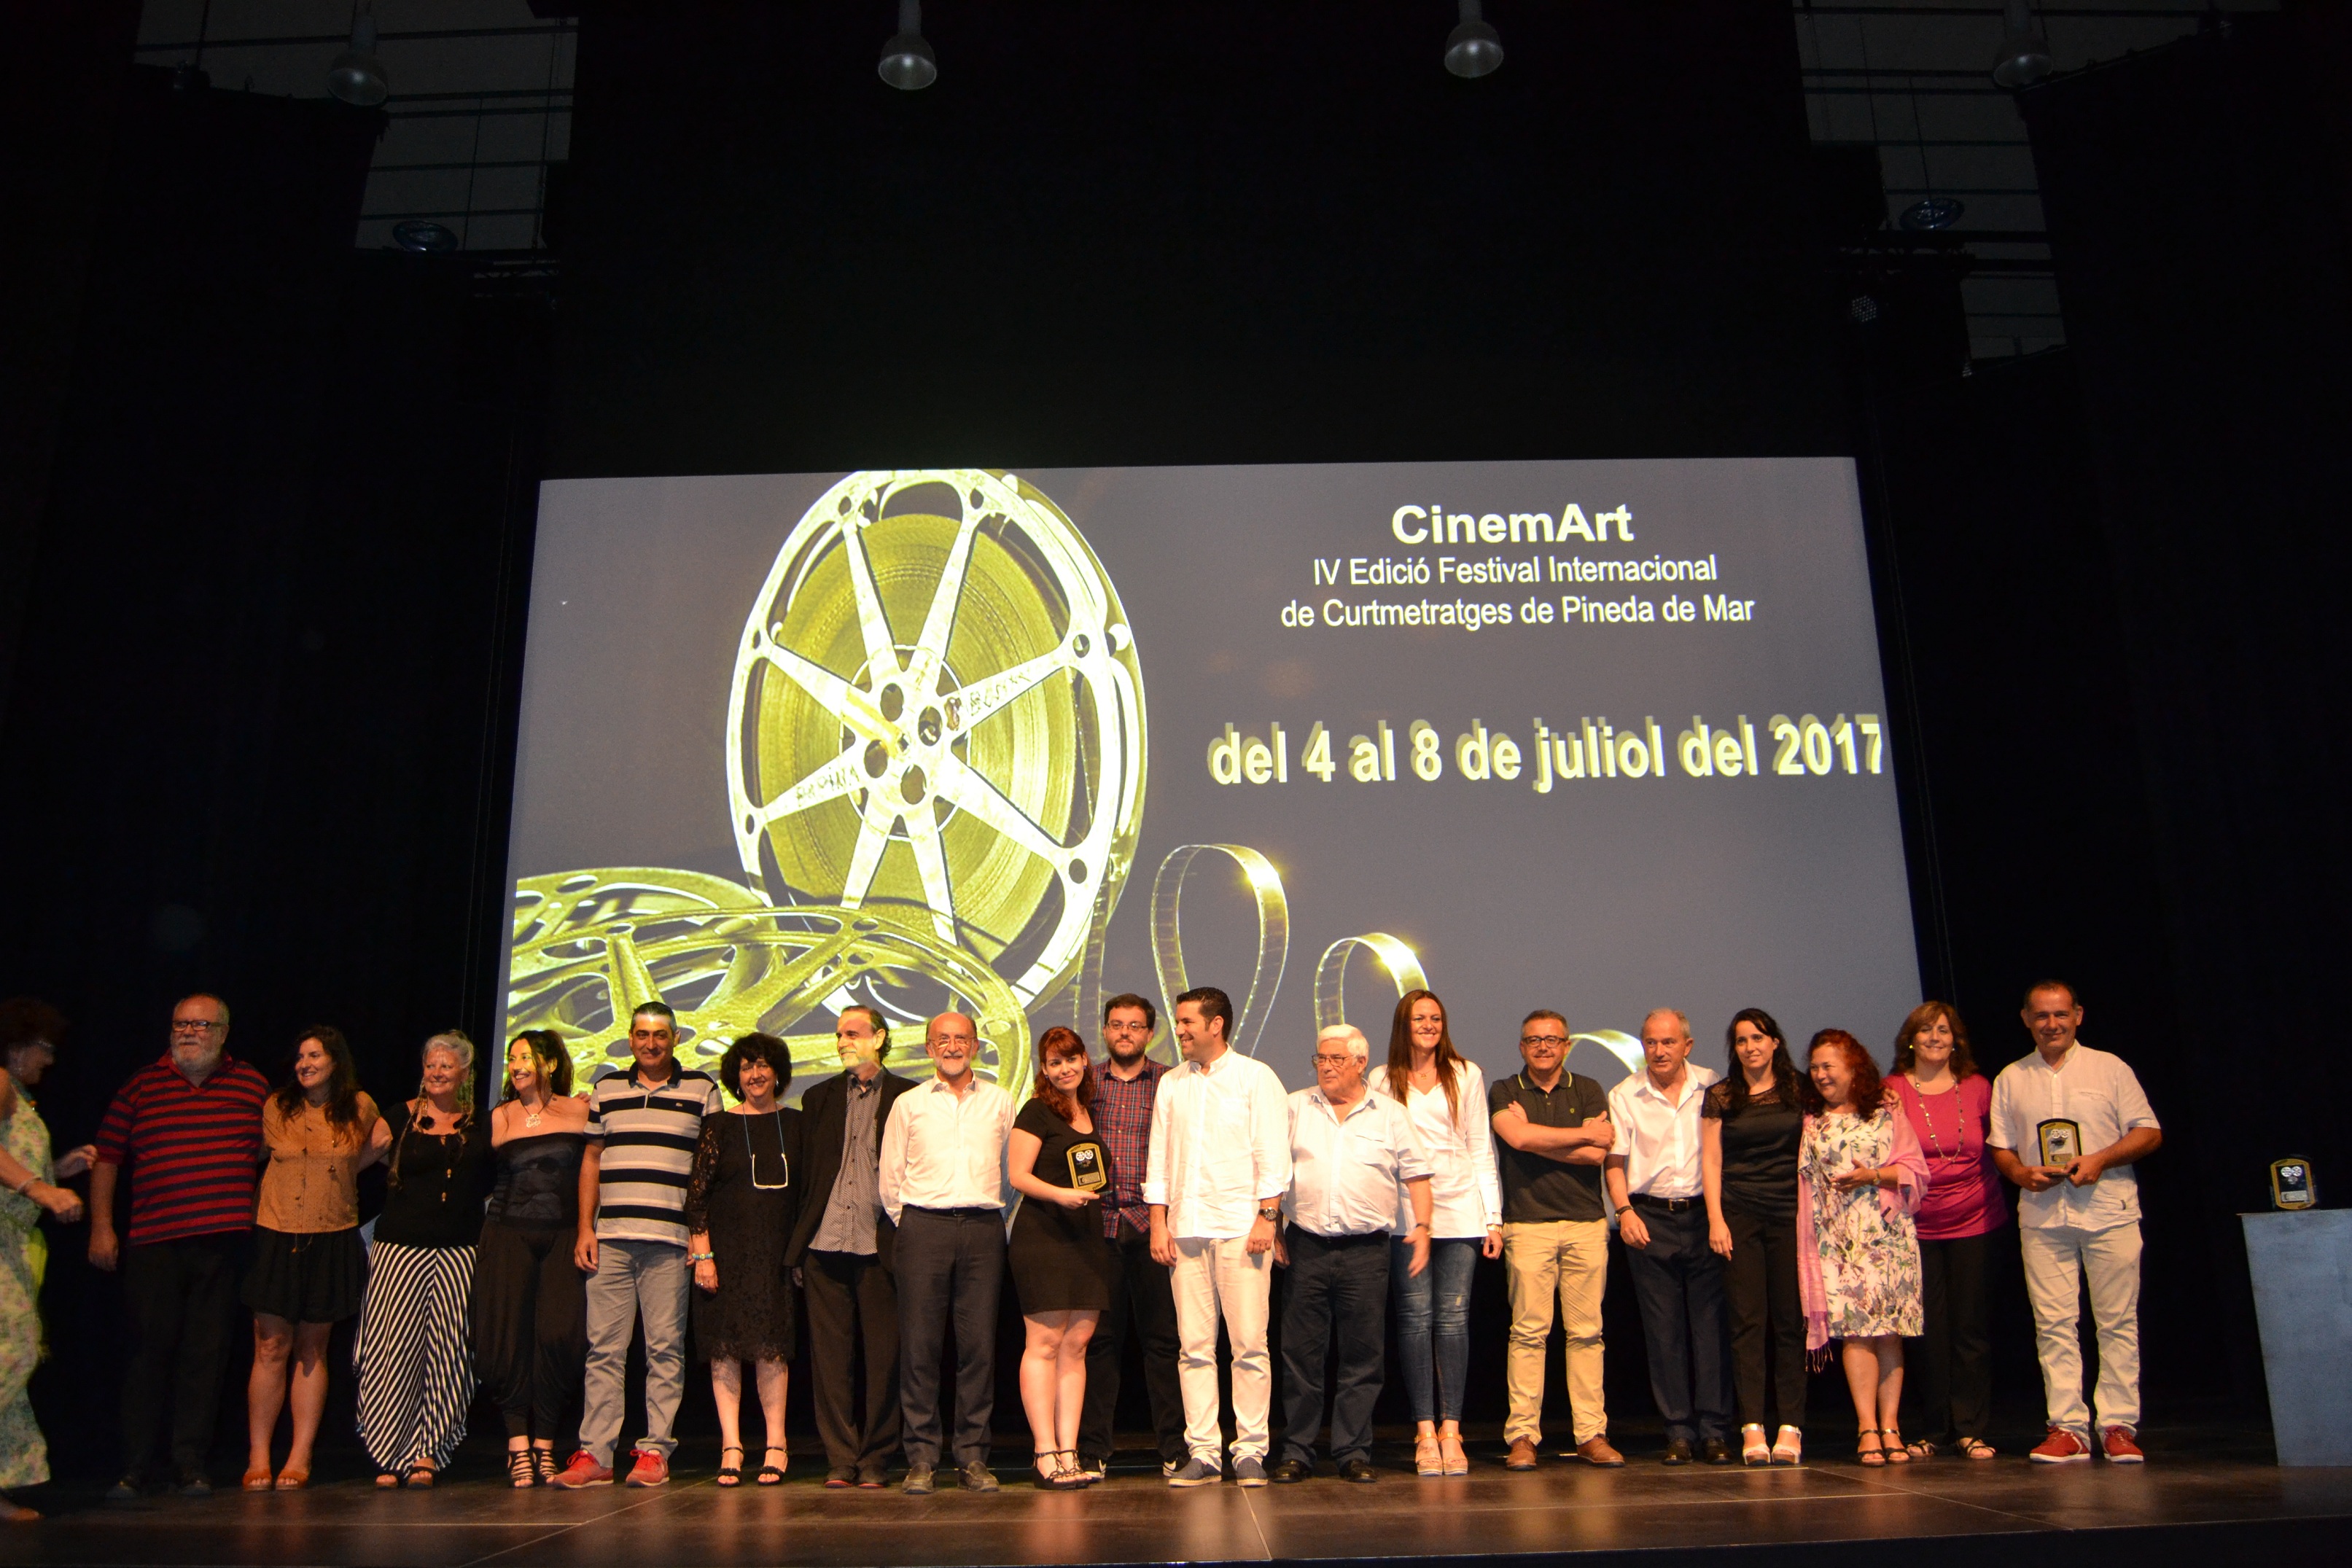 Gala de Cinemart